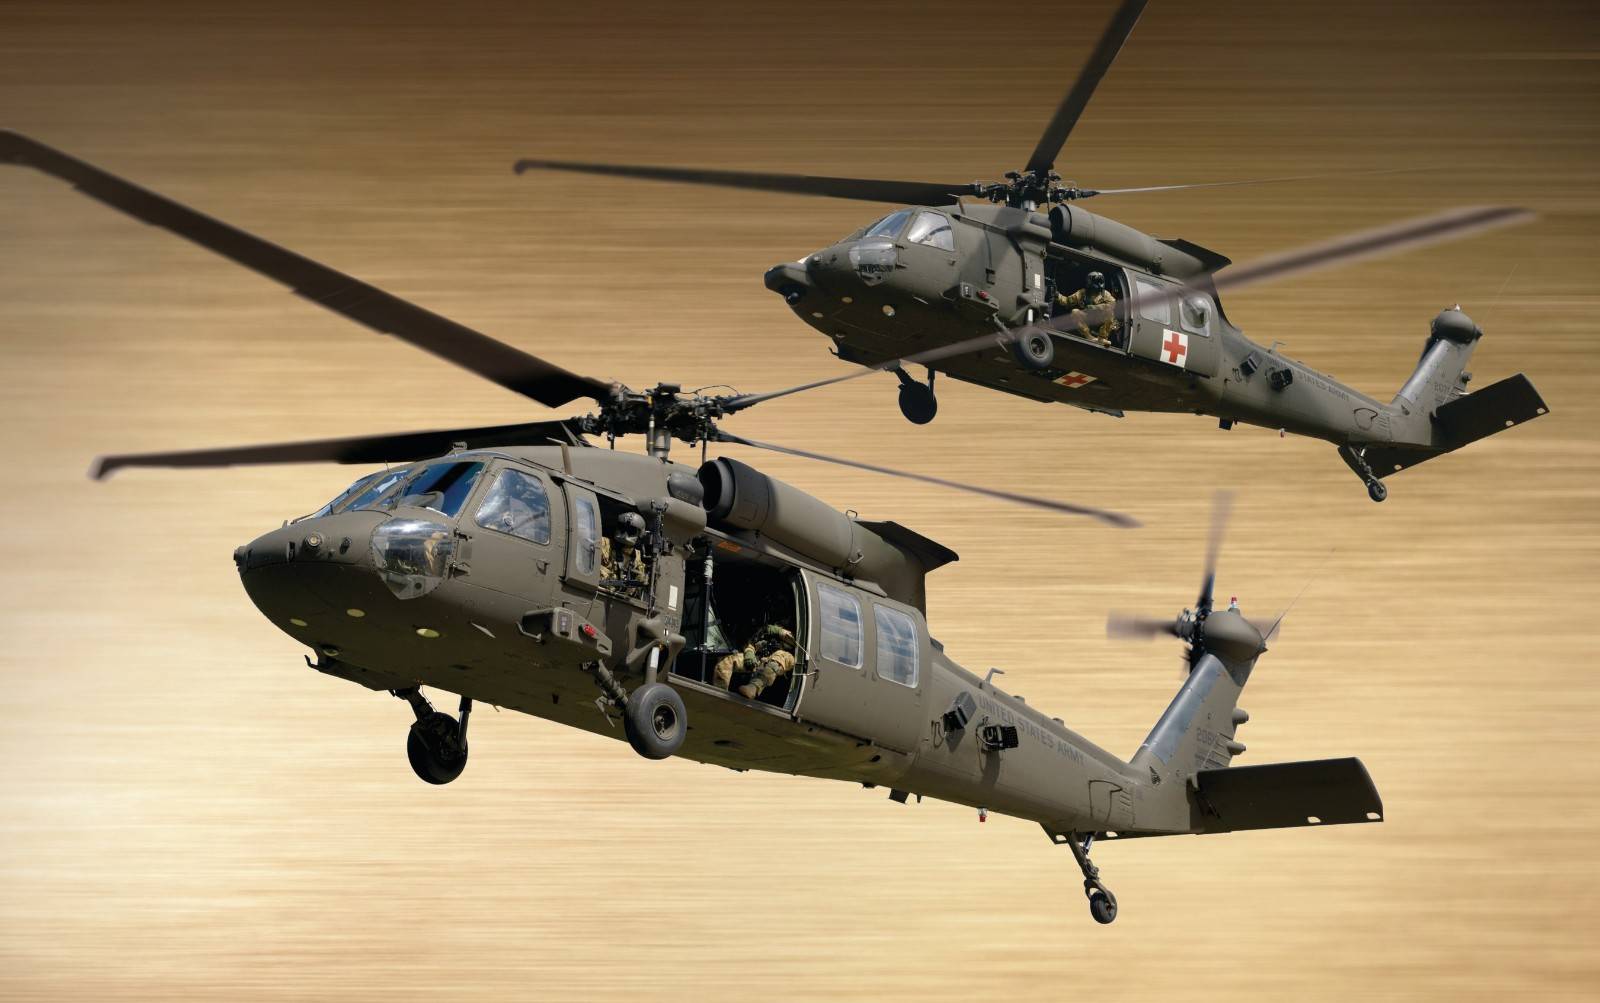 原创防务快讯:2亿美元,卖给捷克4架ah-1z直升机